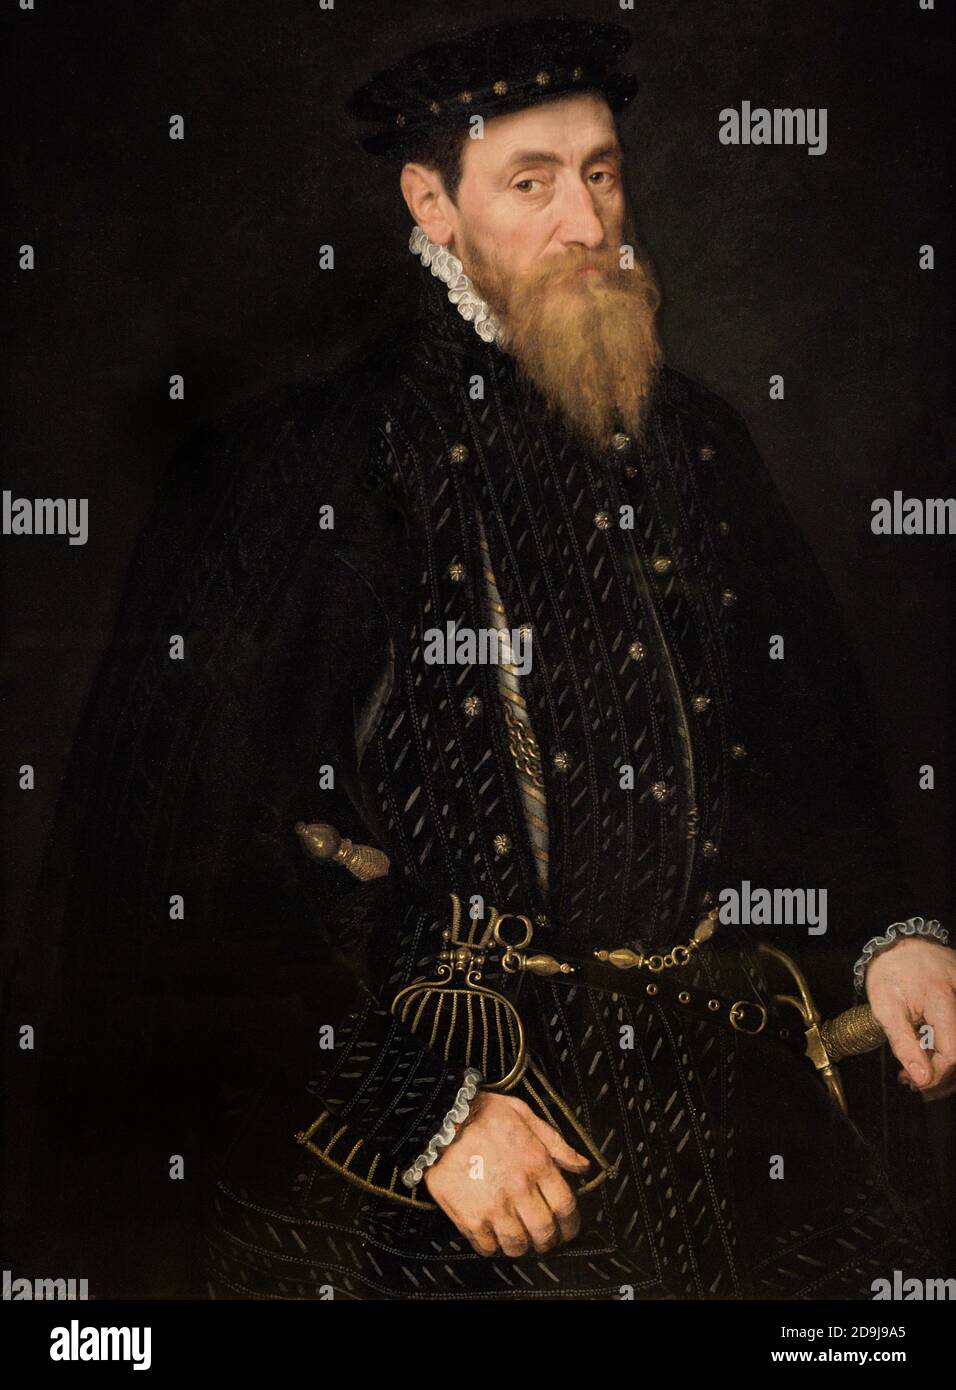 Sir Thomas Gresham (c.1518-1579). Marchand, financier et diplomate anglais Portrait d'un artiste néerlandais inconnu. Huile sur panneau, c. 1565. Musée national du portrait. Londres, Angleterre, Royaume-Uni. Banque D'Images